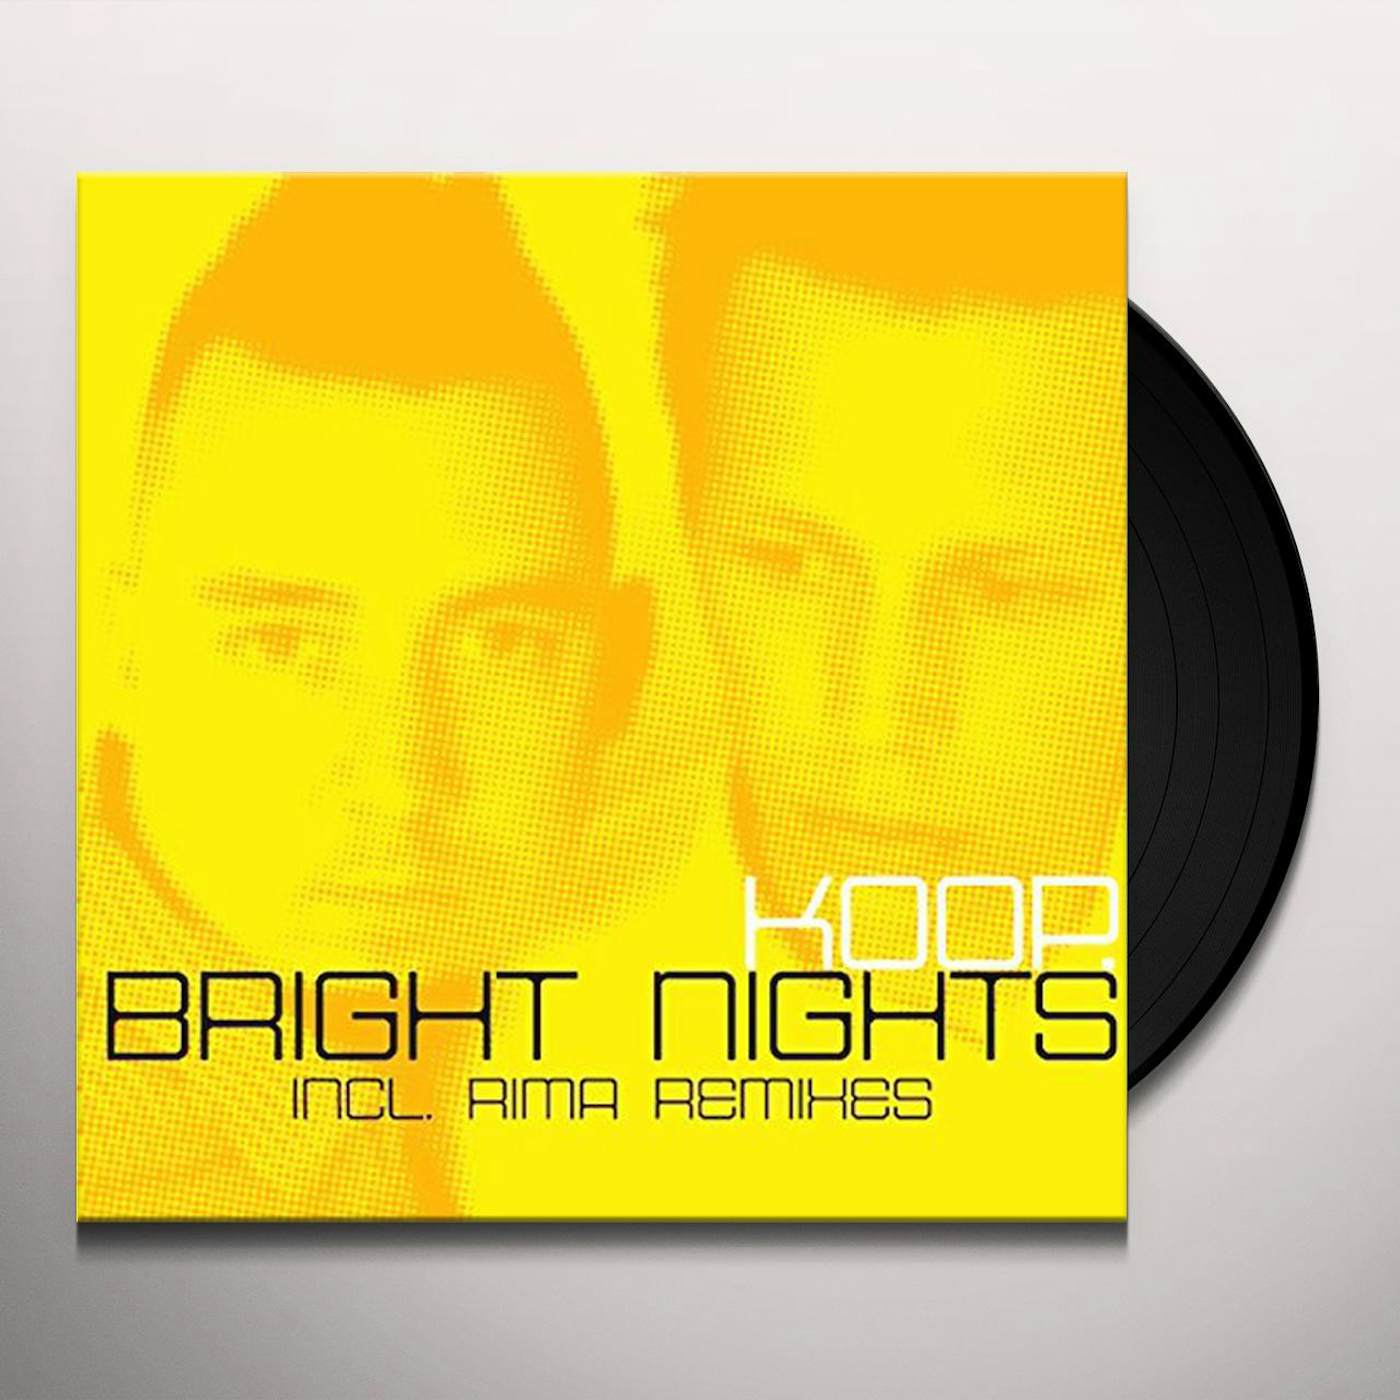 Koop BRIGHT NIGHTS Vinyl Record